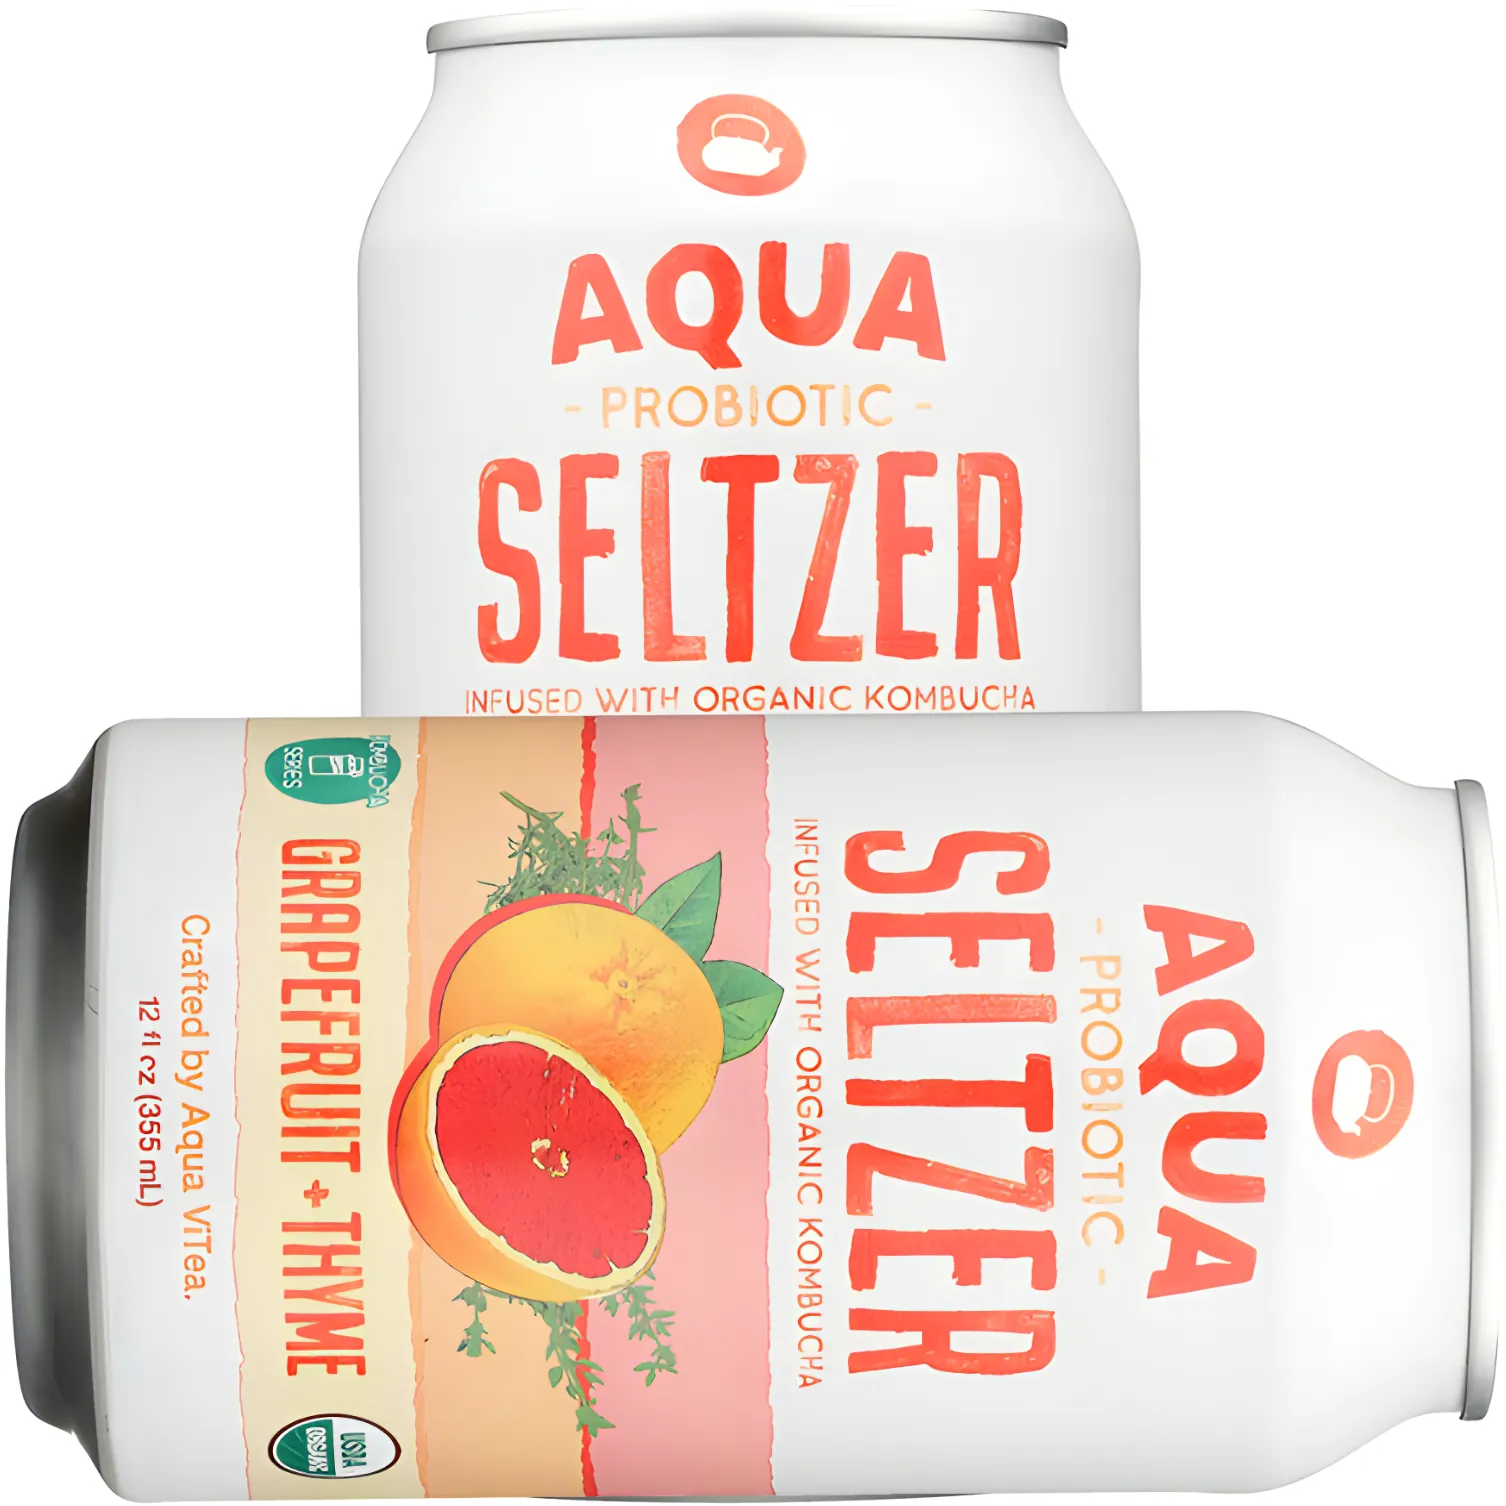 Free Can Of Aqua Probiotic Seltzer Or Kombucha